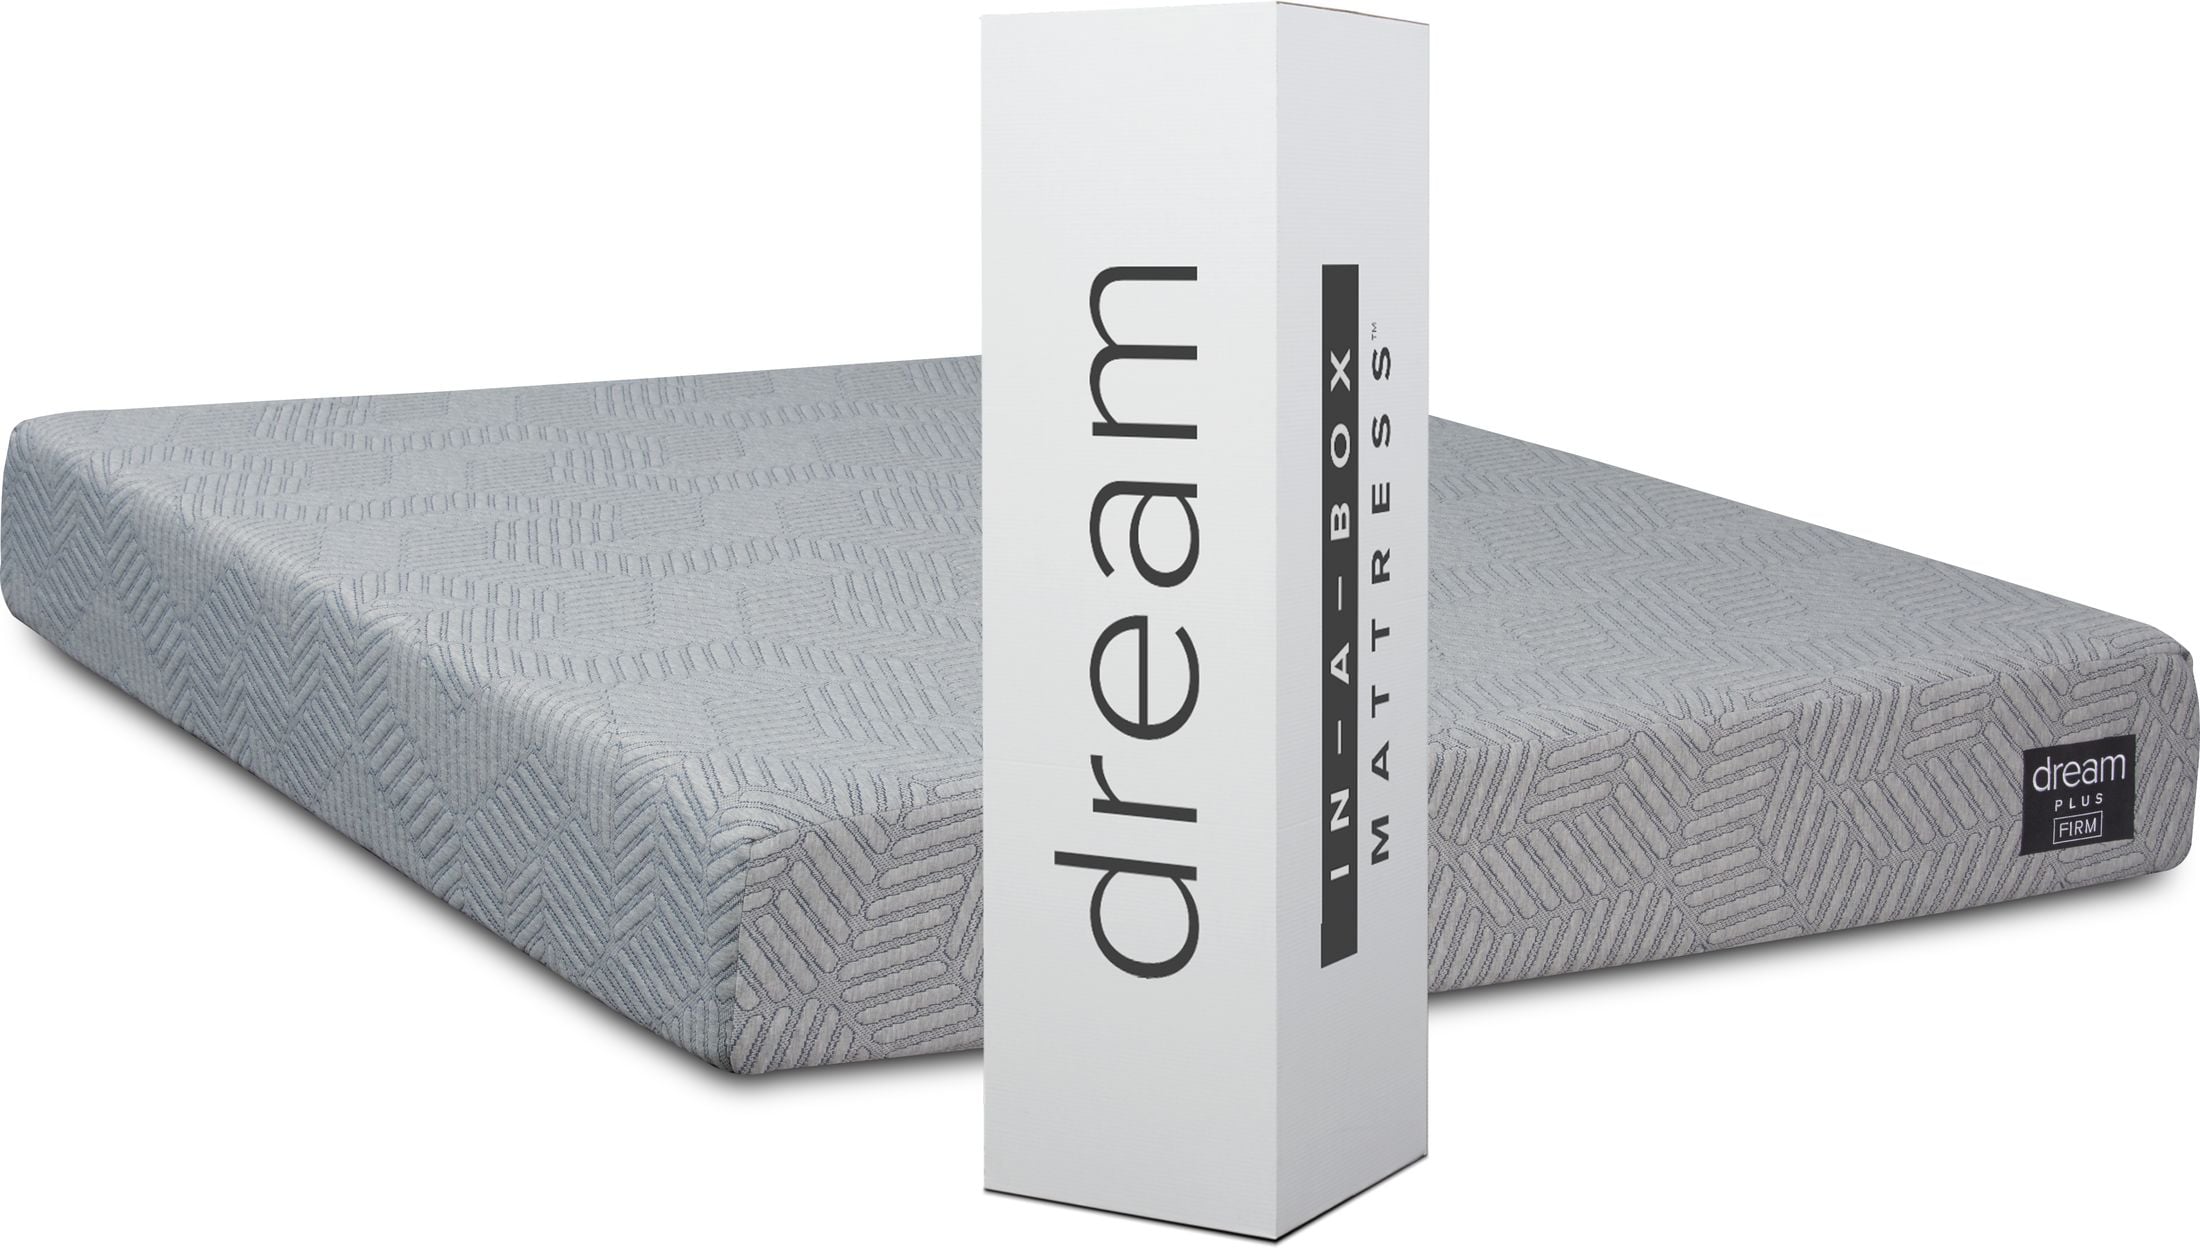 dream collection mattress queen